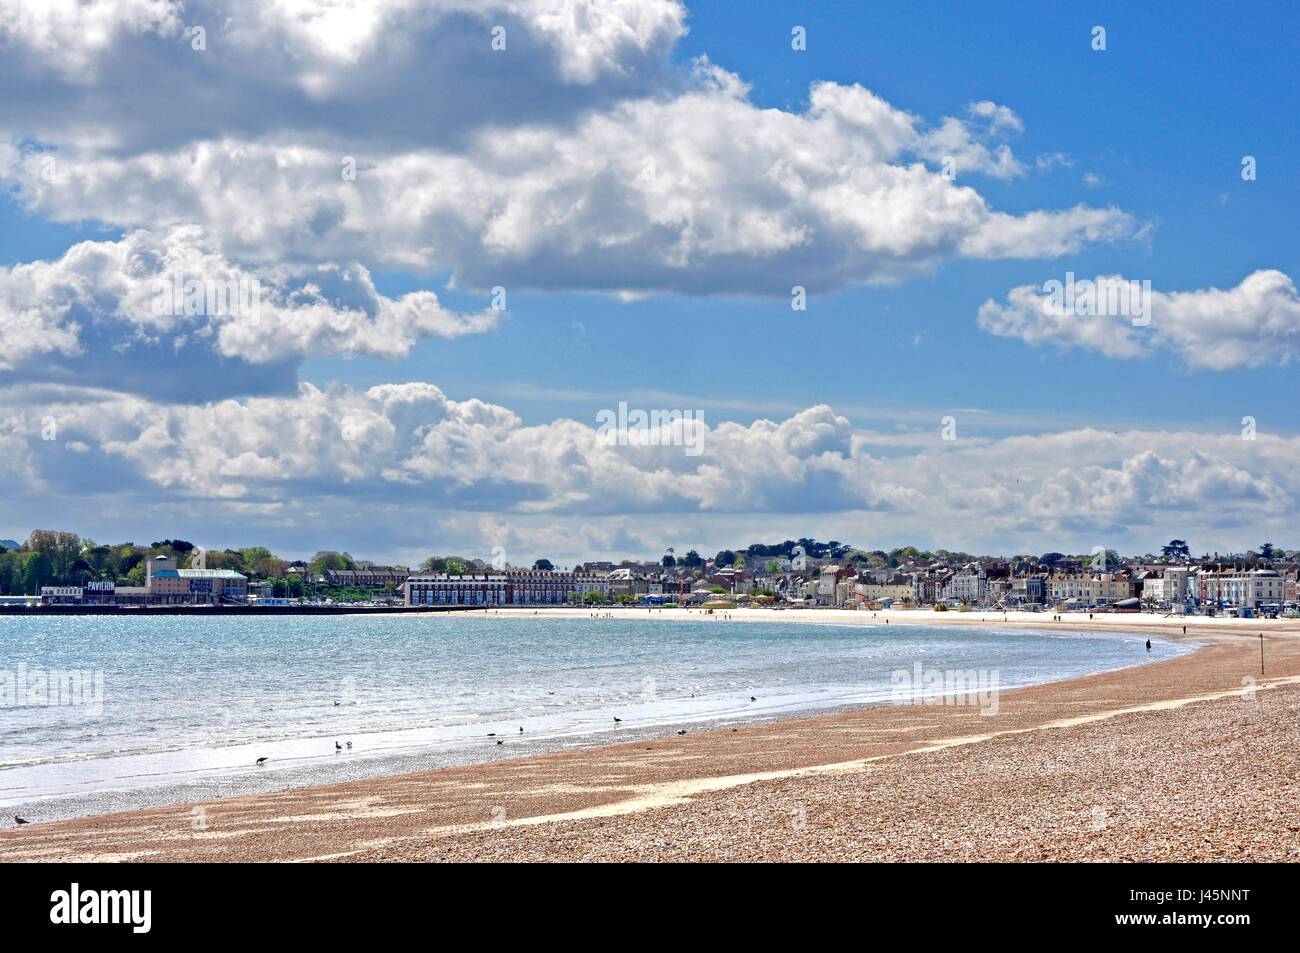 Strand von Weymouth - Dorset Panoramablick auf geschwungenen Vista direkt am Meer - attraktive Stadt jenseits - Frühsommer Sonnenlicht - blaues Meer und cloud-gesprenkelt Himmel Stockfoto